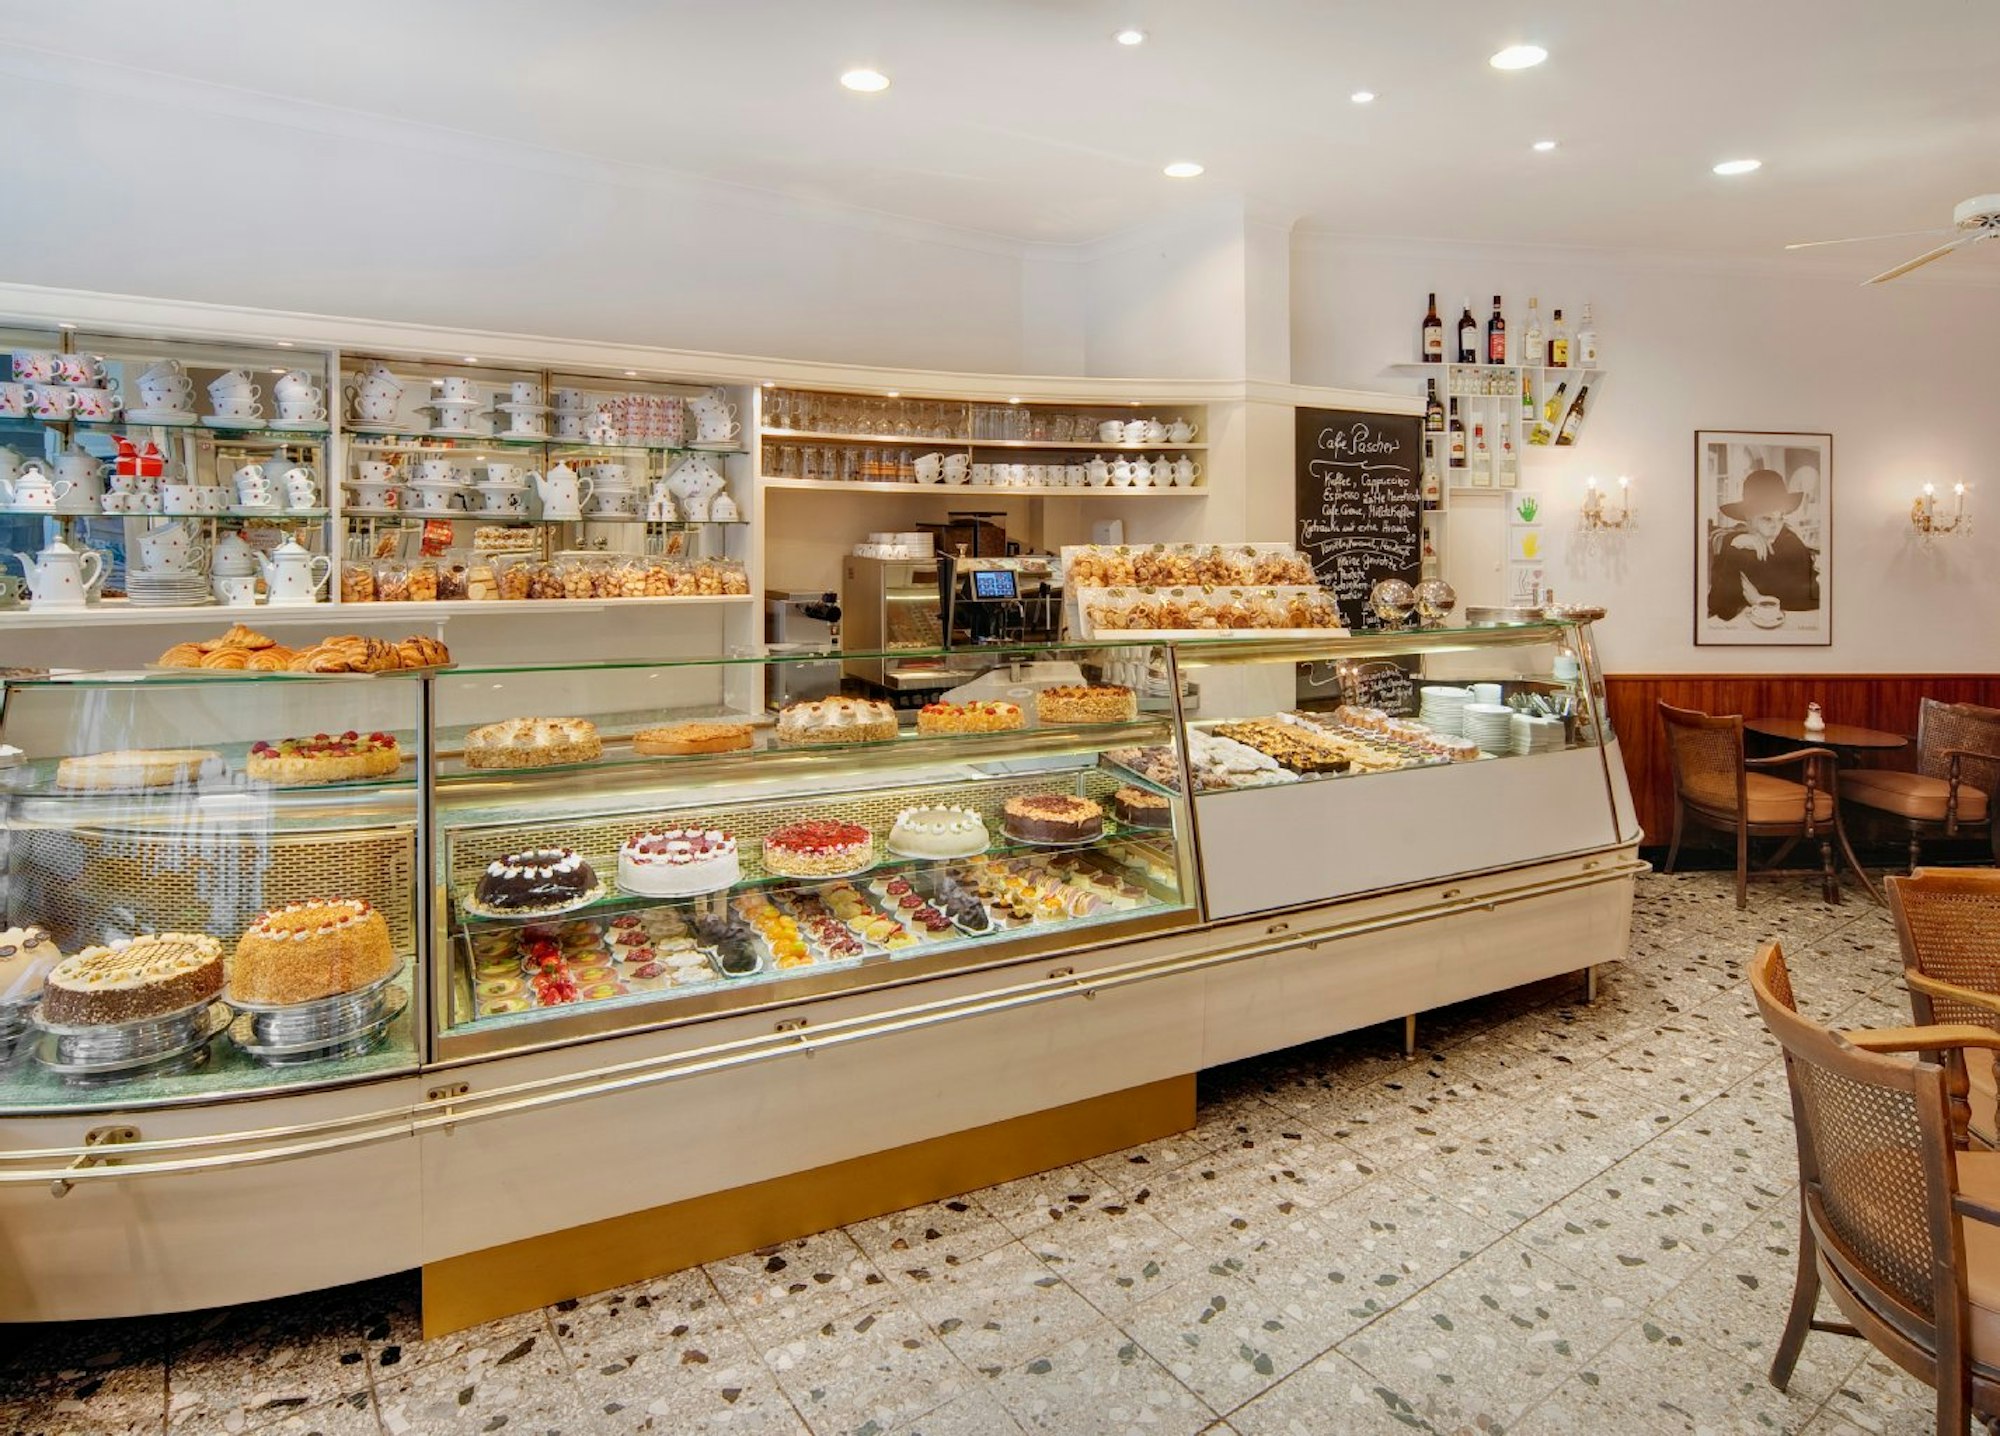 Mit Brot und Brötchen fing alles an, heute verkauft das Café Pascher Torten, Törtchen und Pralinenkreationen.